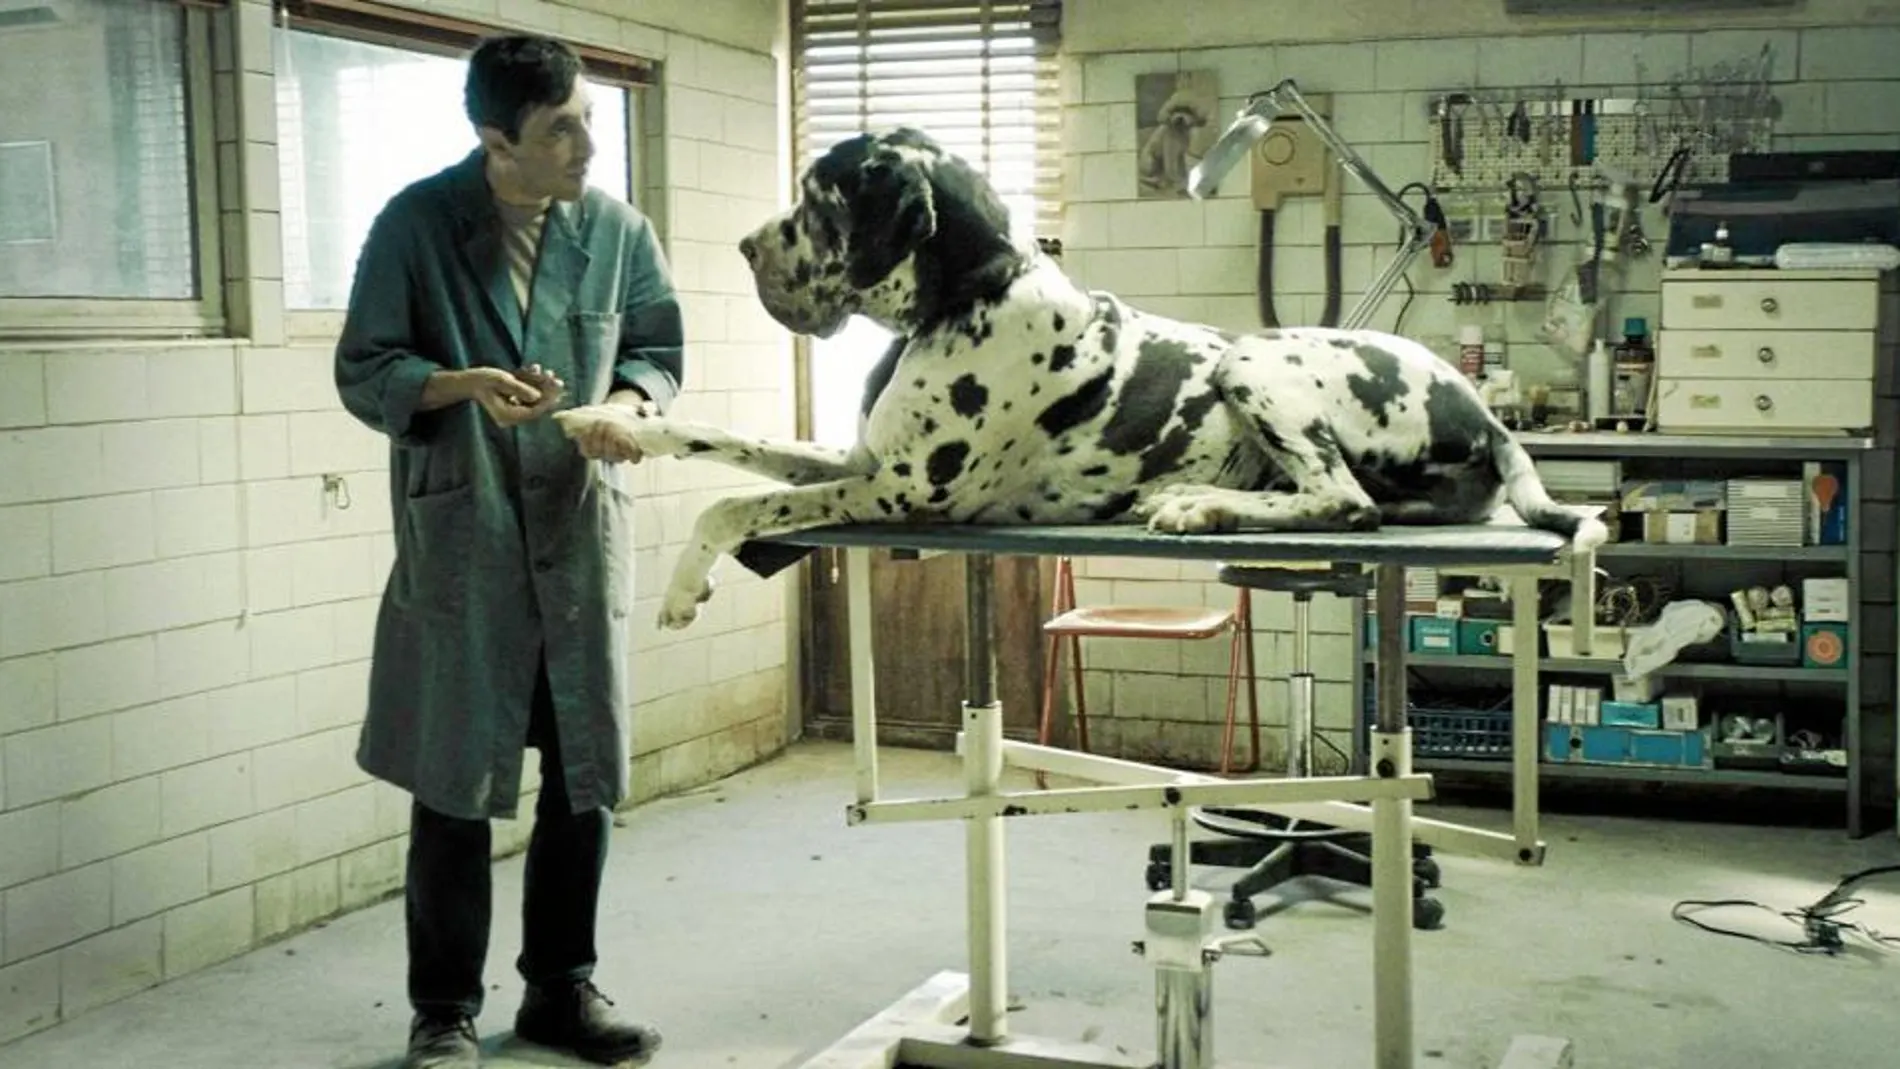 Marcello Fonte da vida al protagonista del filme, de Matteo Garrone, un peluquero canino